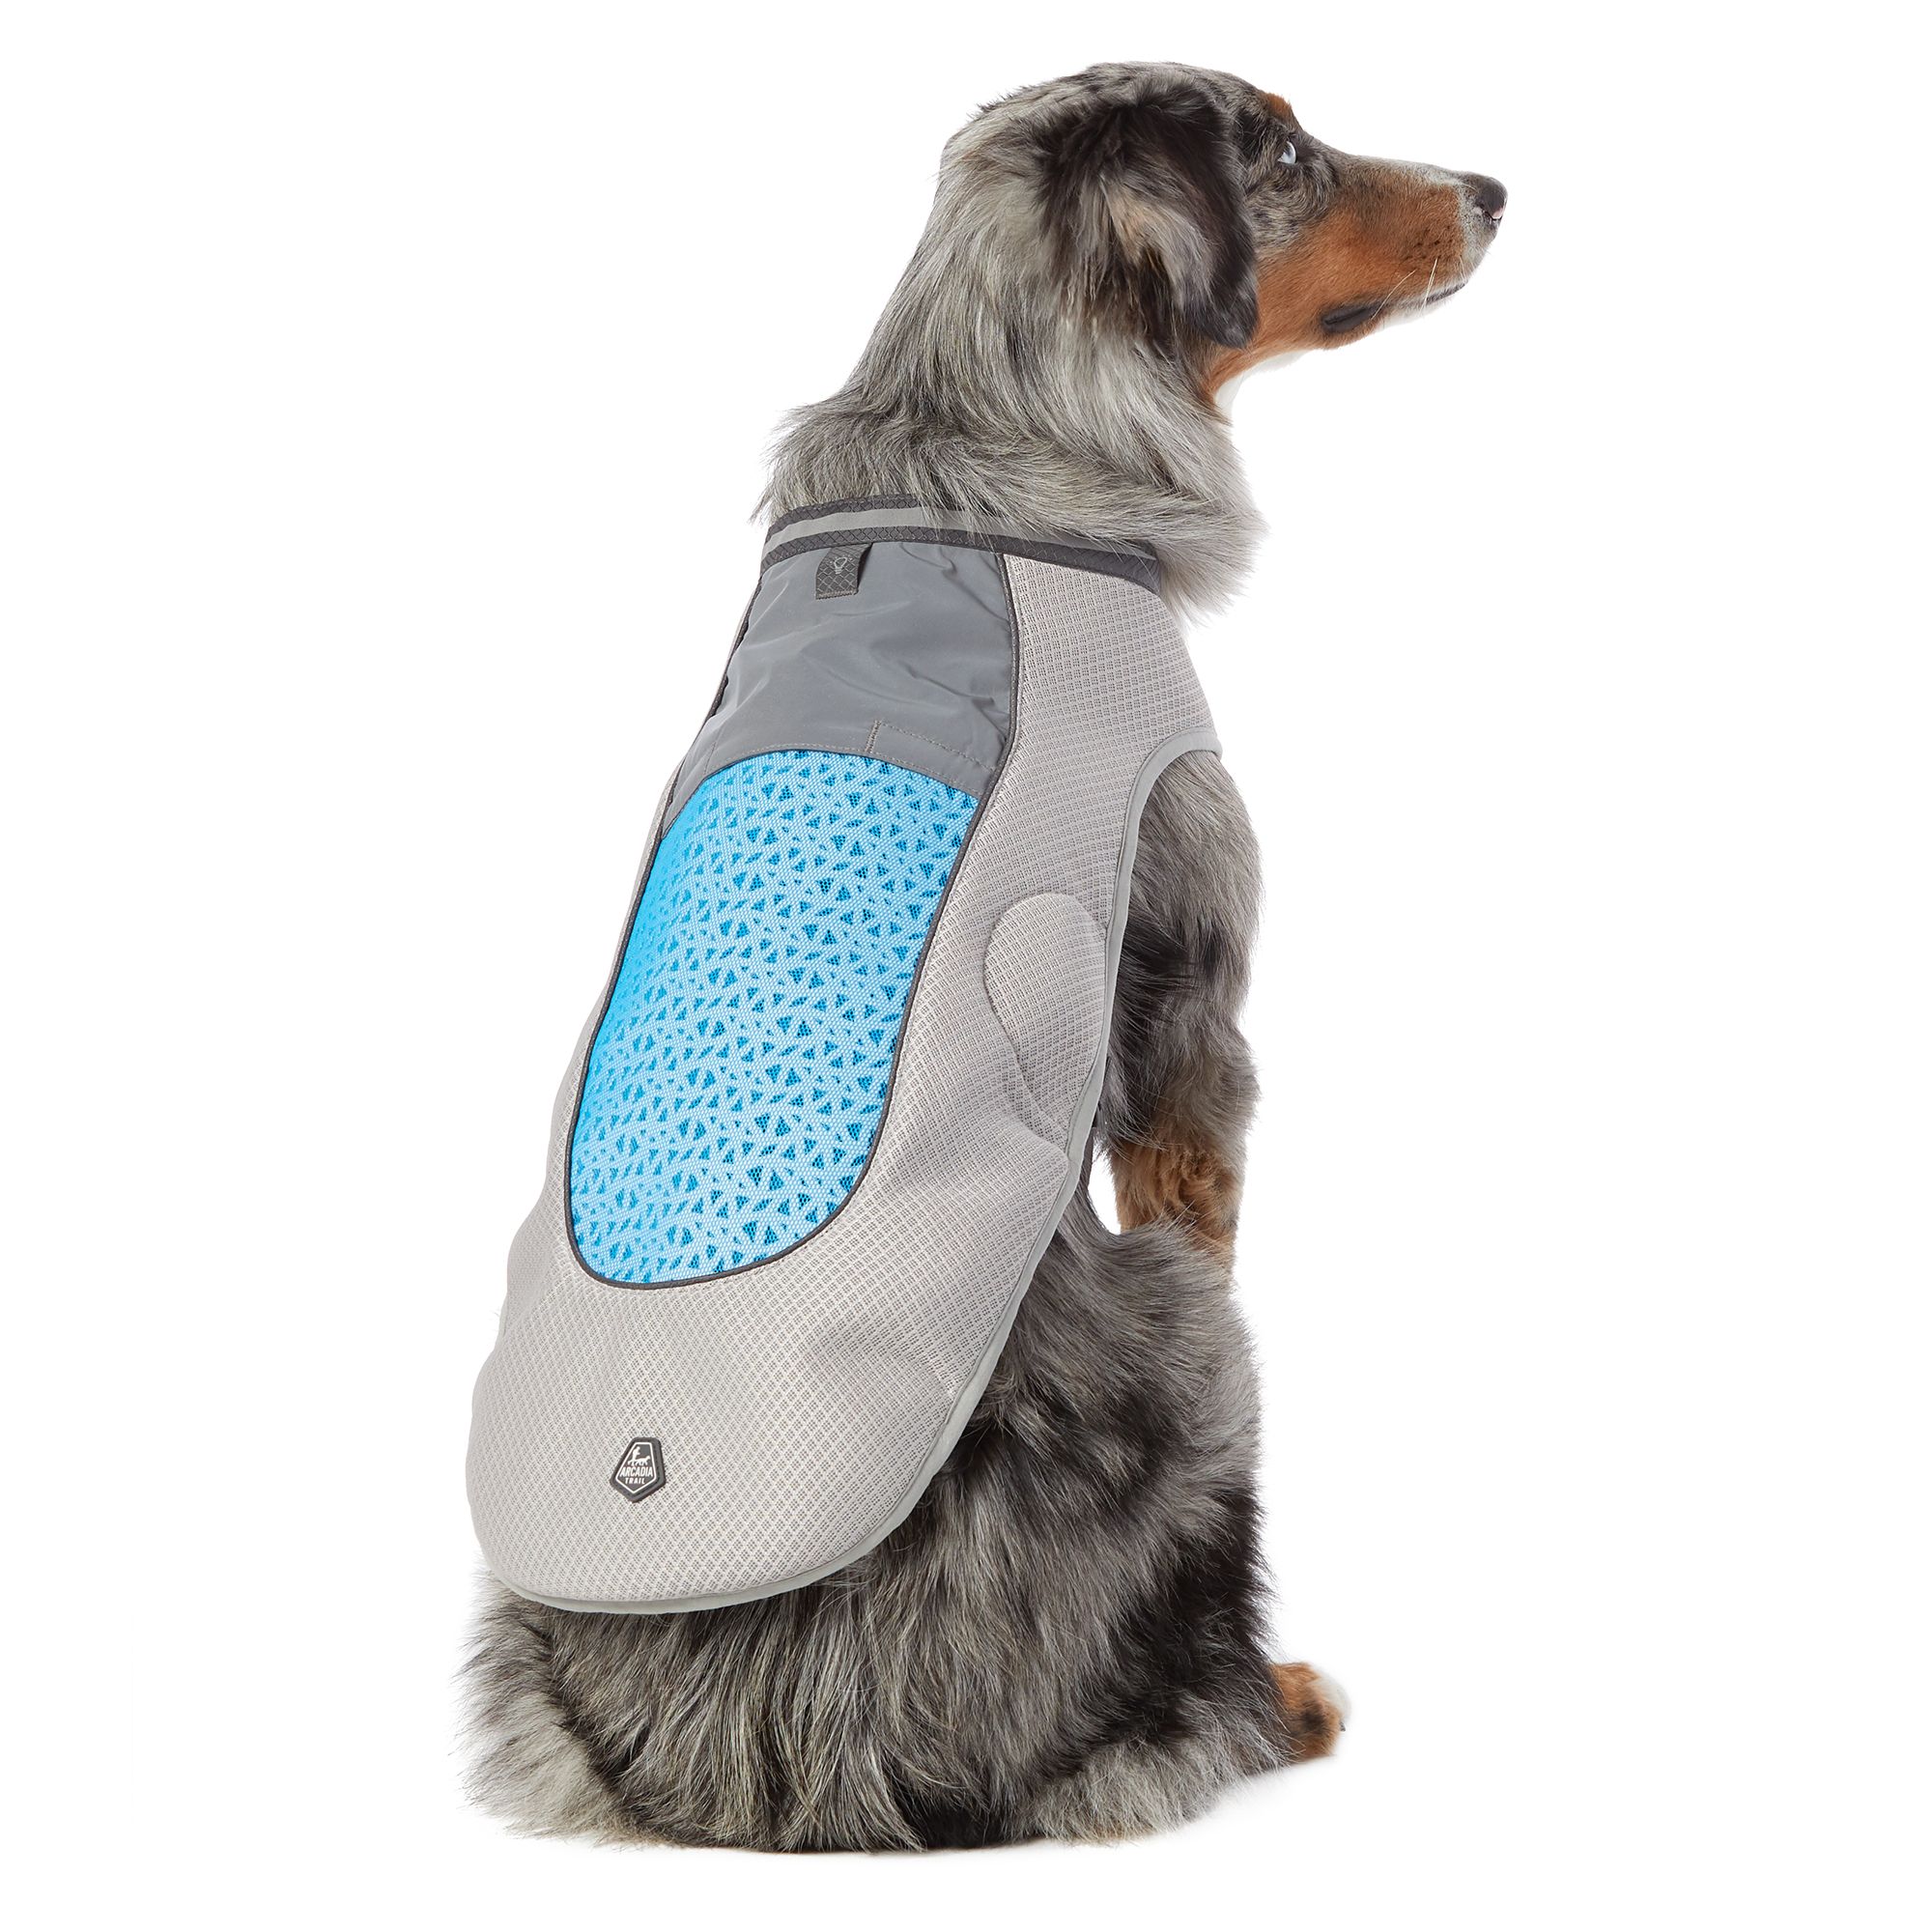 best dog cooling vest